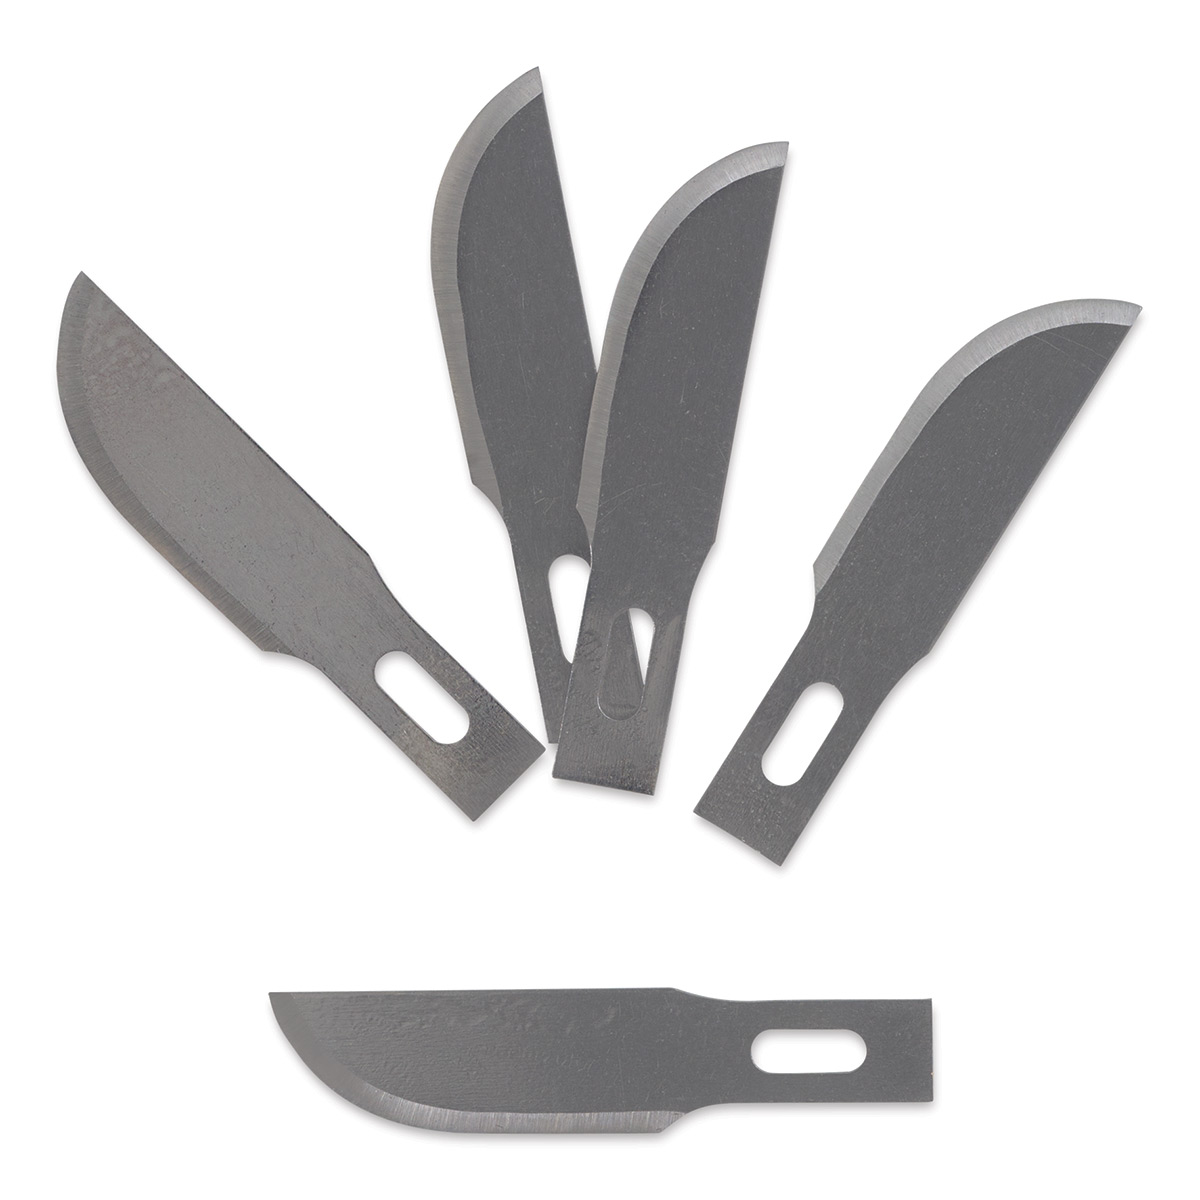 Xacto Knife - Retractable by DaHouzKat